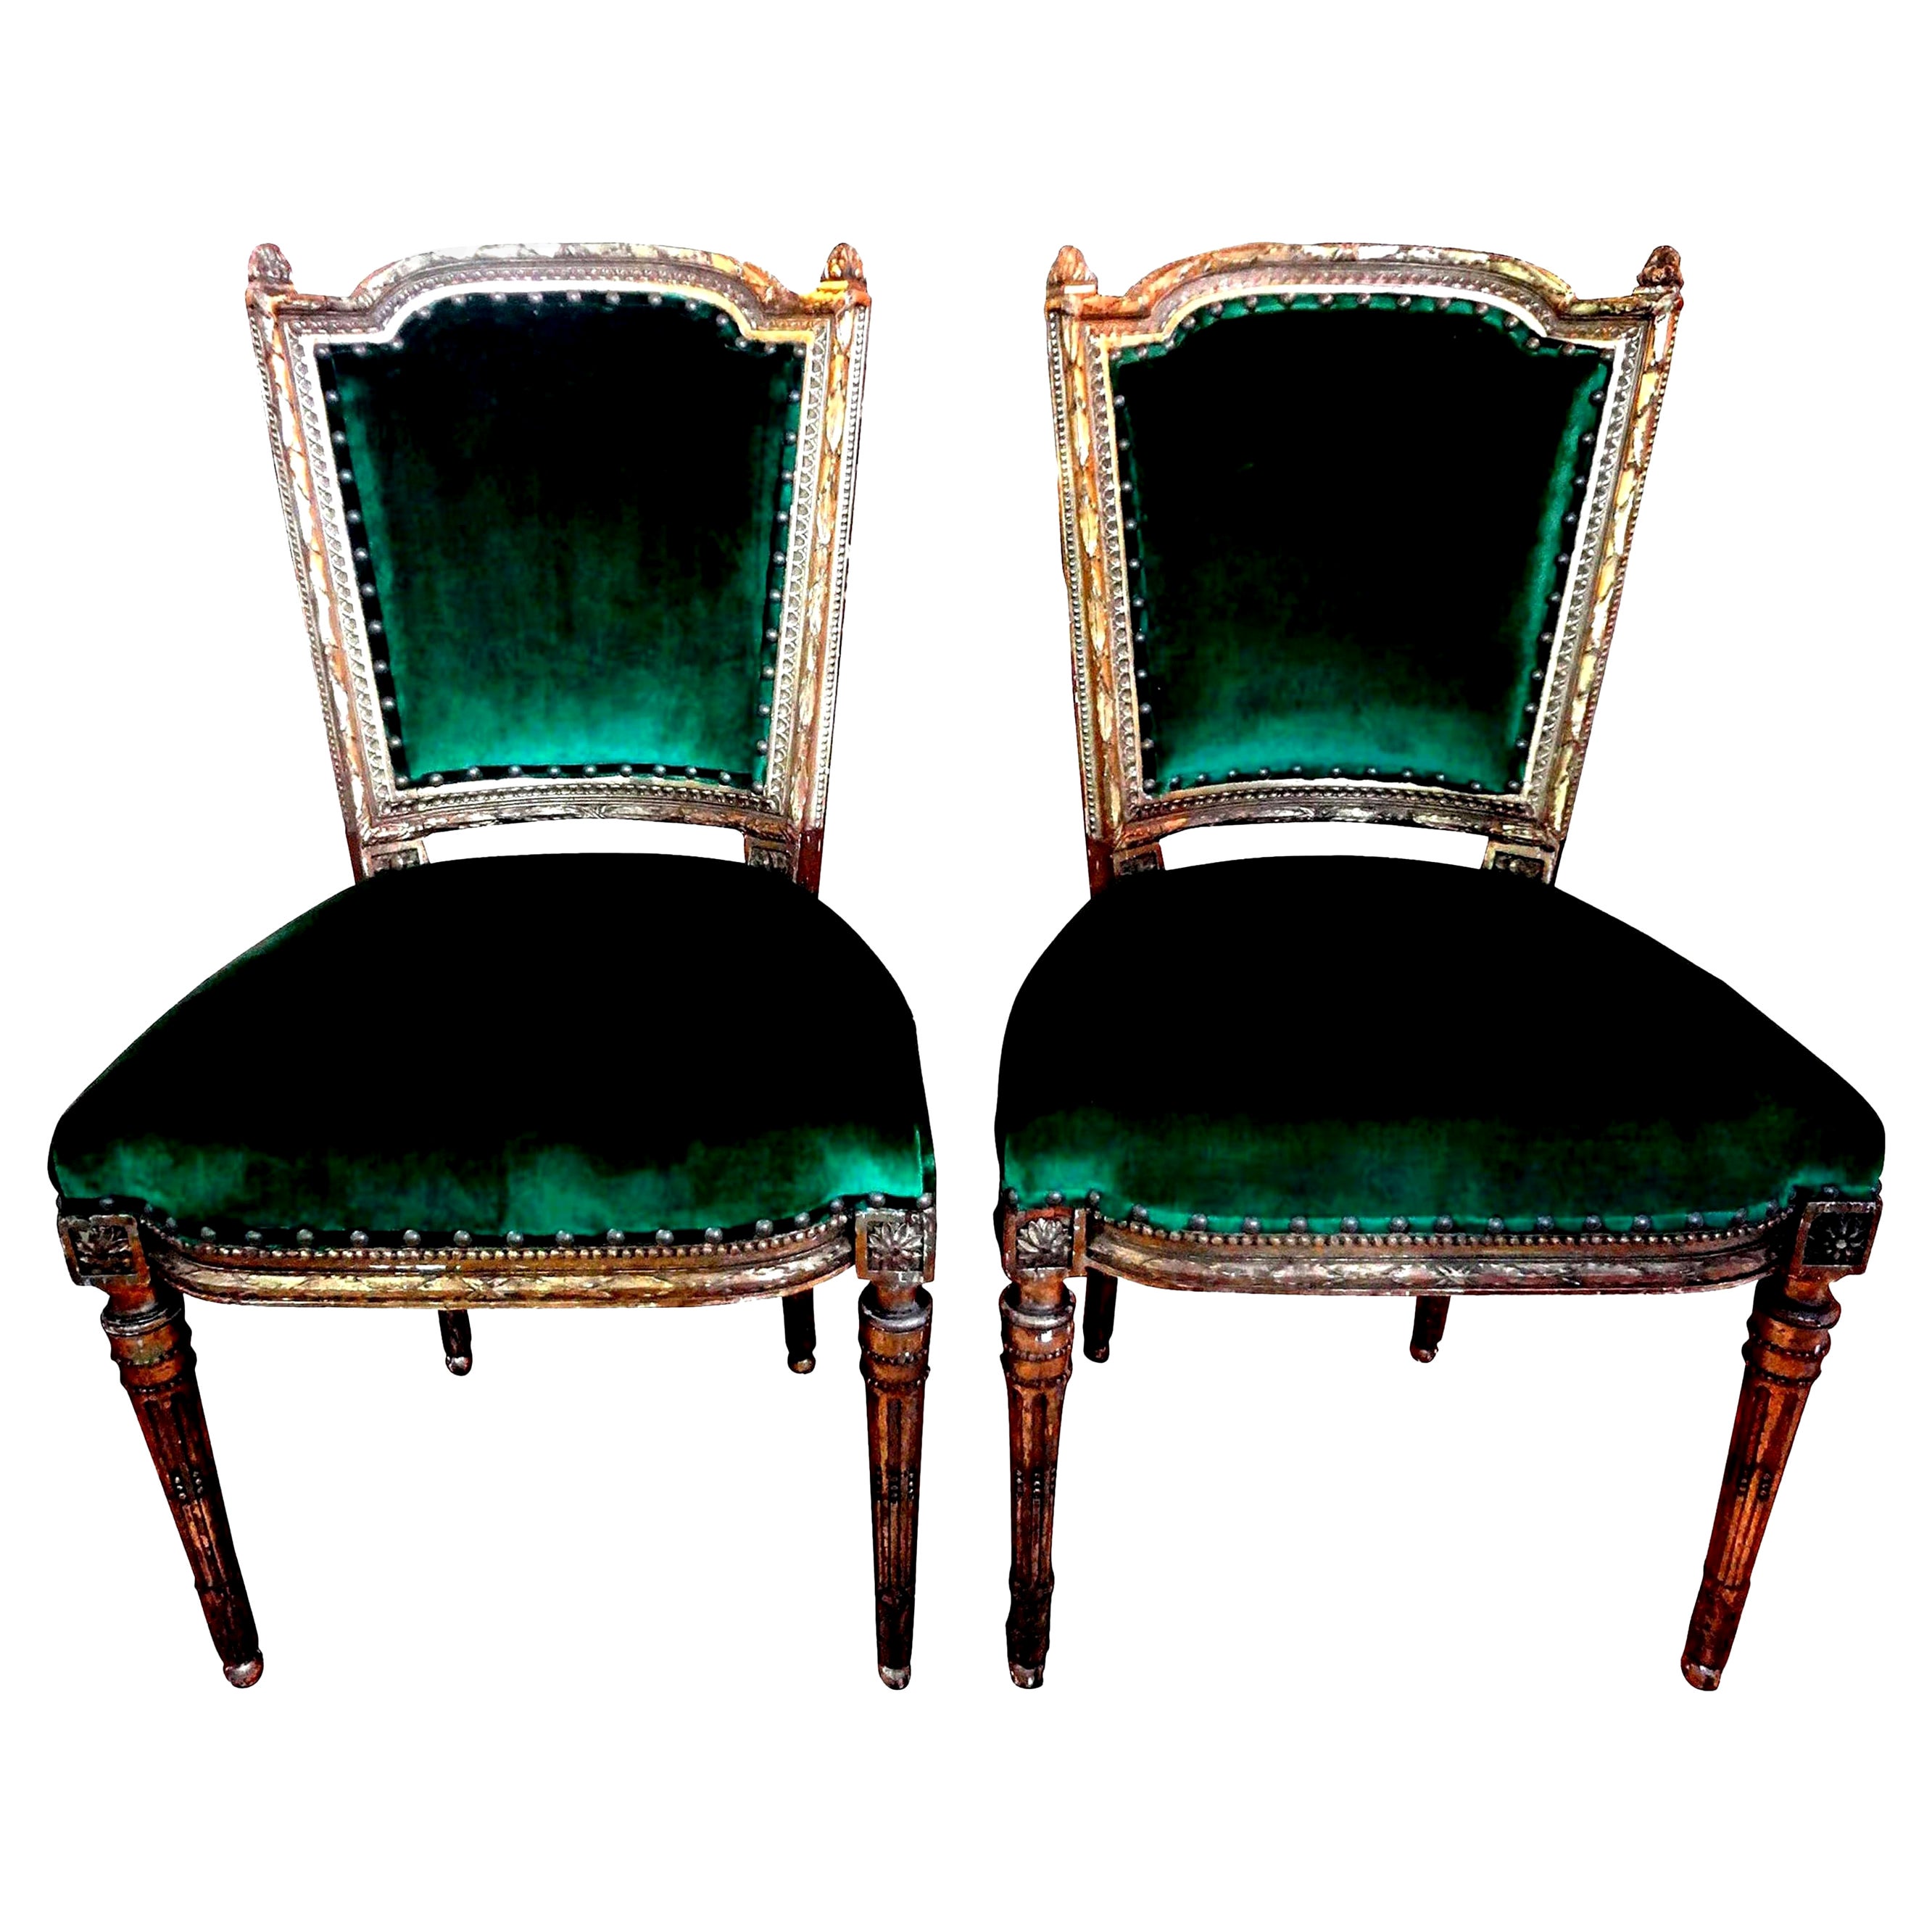 Paire de chaises françaises de style Louis XVI du 19ème siècle en bois doré